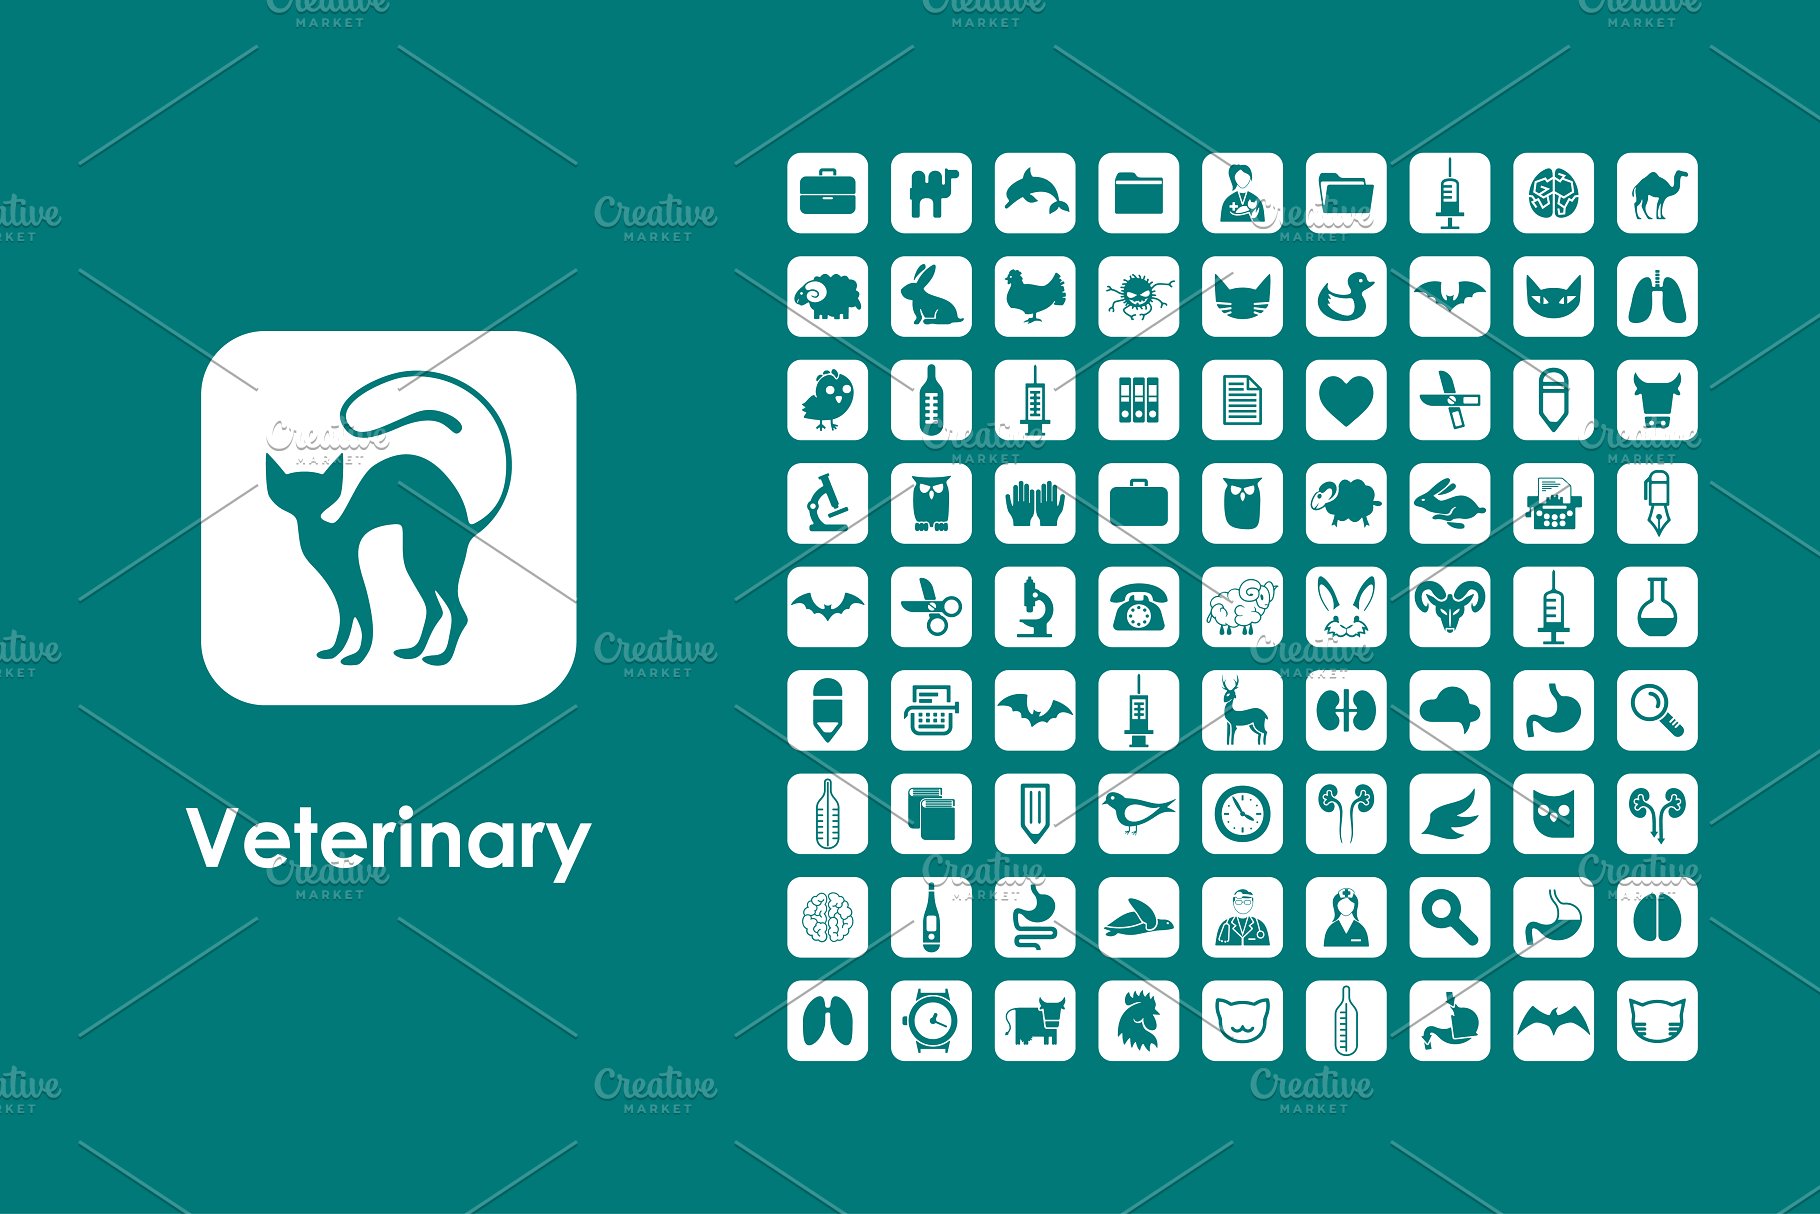 兽医元素图标下载 Veterinary icons #136